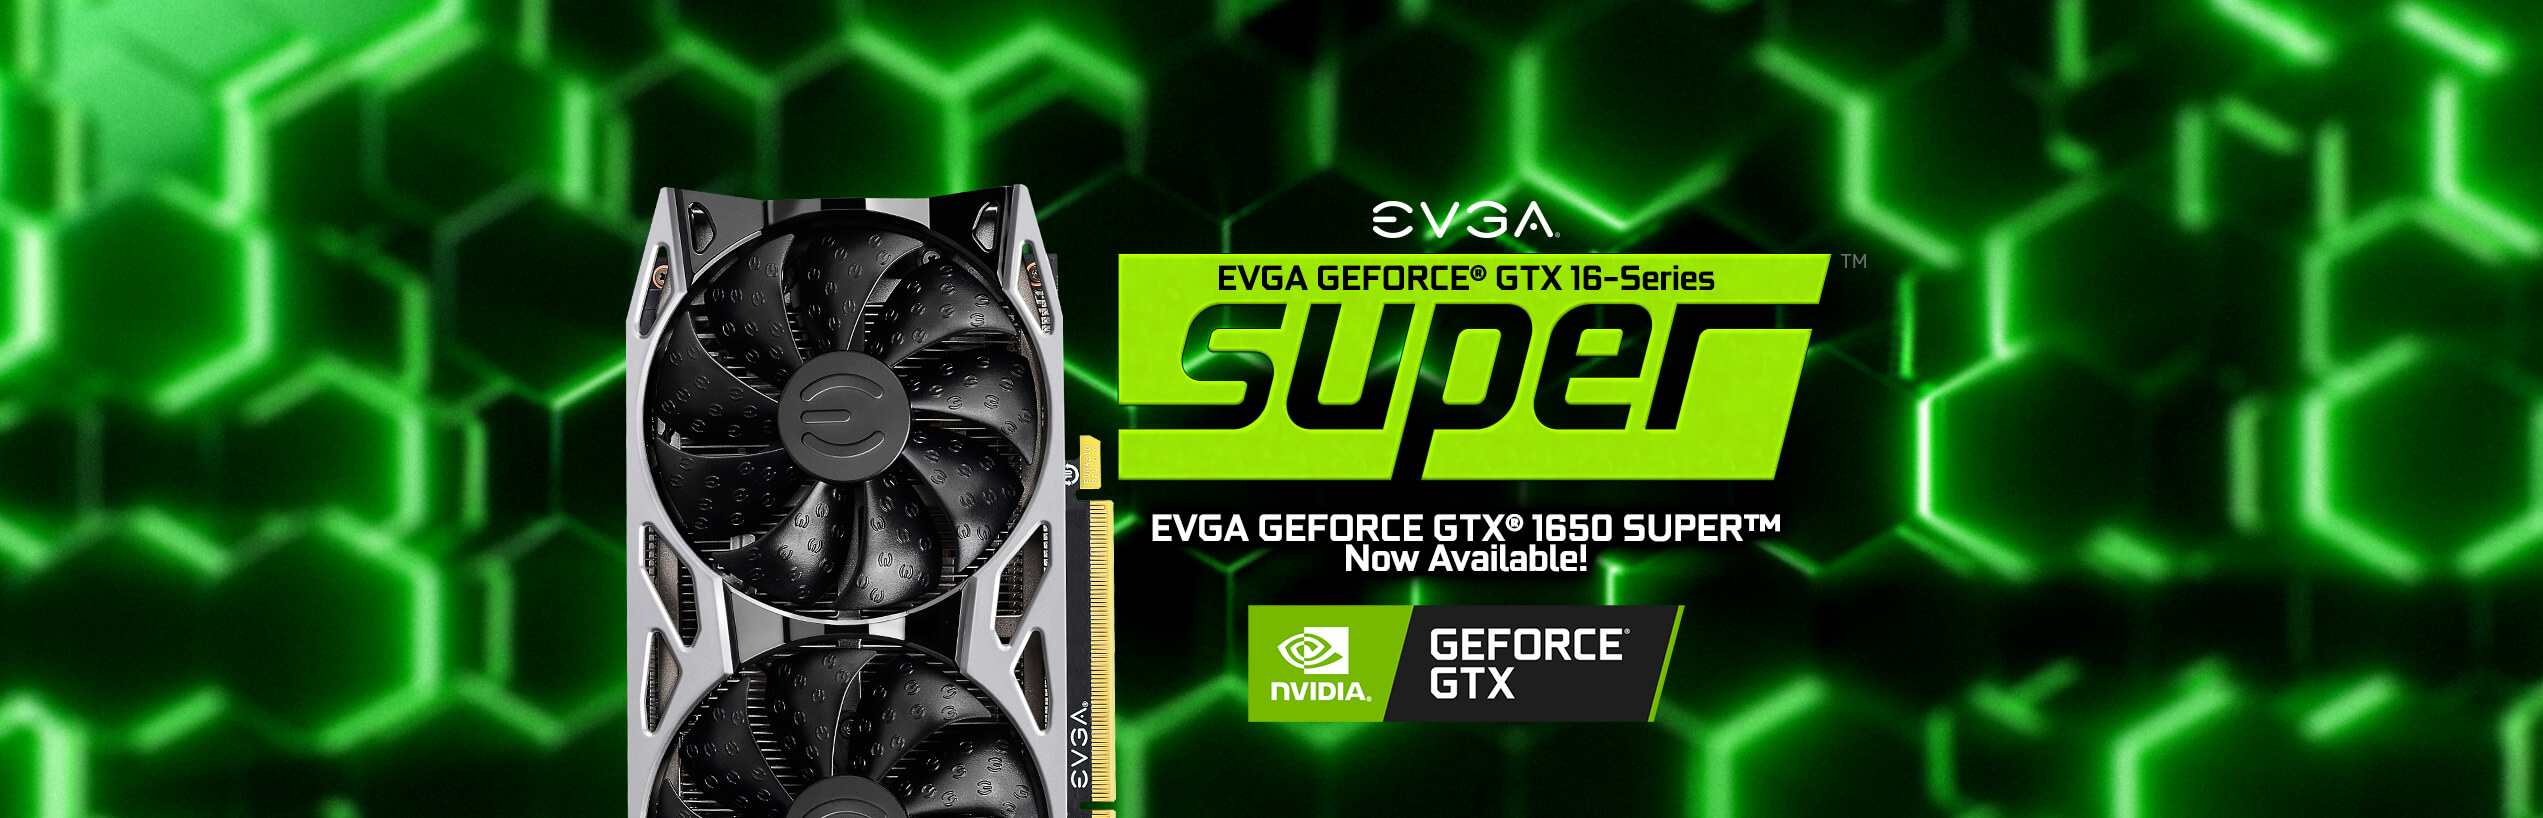 EVGA GeForce® GTX 1660 SUPER™/ GTX 1650 SUPER™